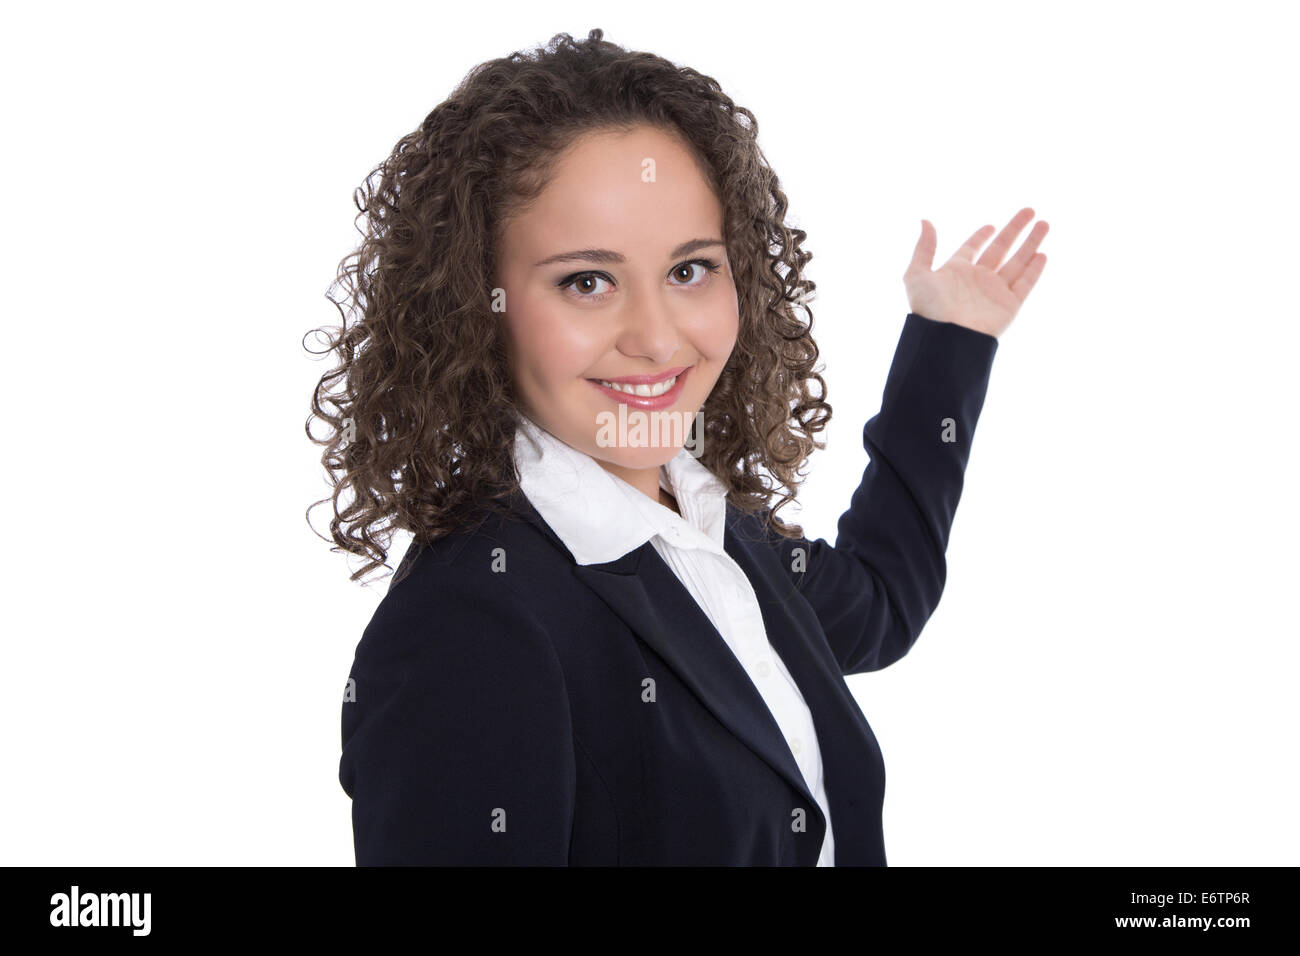 Professional isolato giovane imprenditrice con brunette capelli ricci presentando su sfondo bianco con la mano. Foto Stock